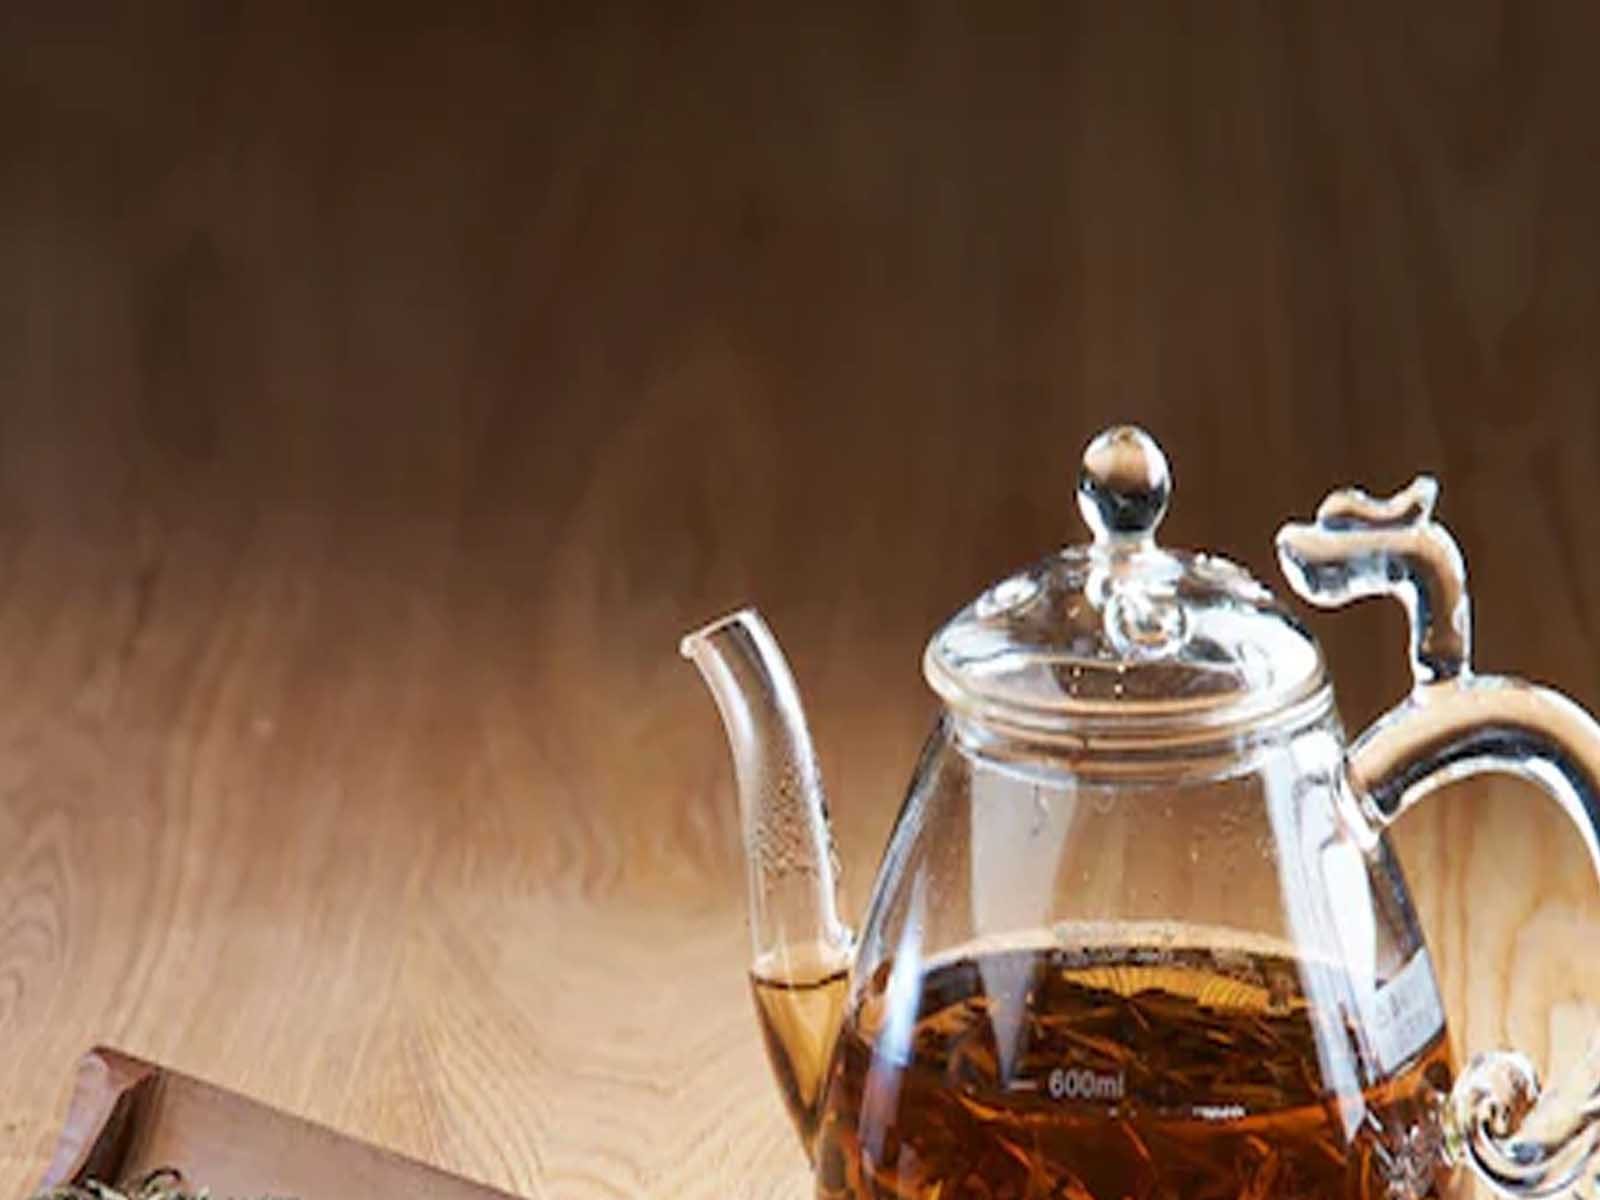 Black Tea Benefits: ਬਲੈਕ ਟੀ ਪੀਣ ਦੇ ਹੁੰਦੇ ਹਨ ਕਈ ਫਾਇਦੇ, ਤੁਸੀ ਵੀ ਜ਼ਰੂਰ ਜਾਣੋ 
